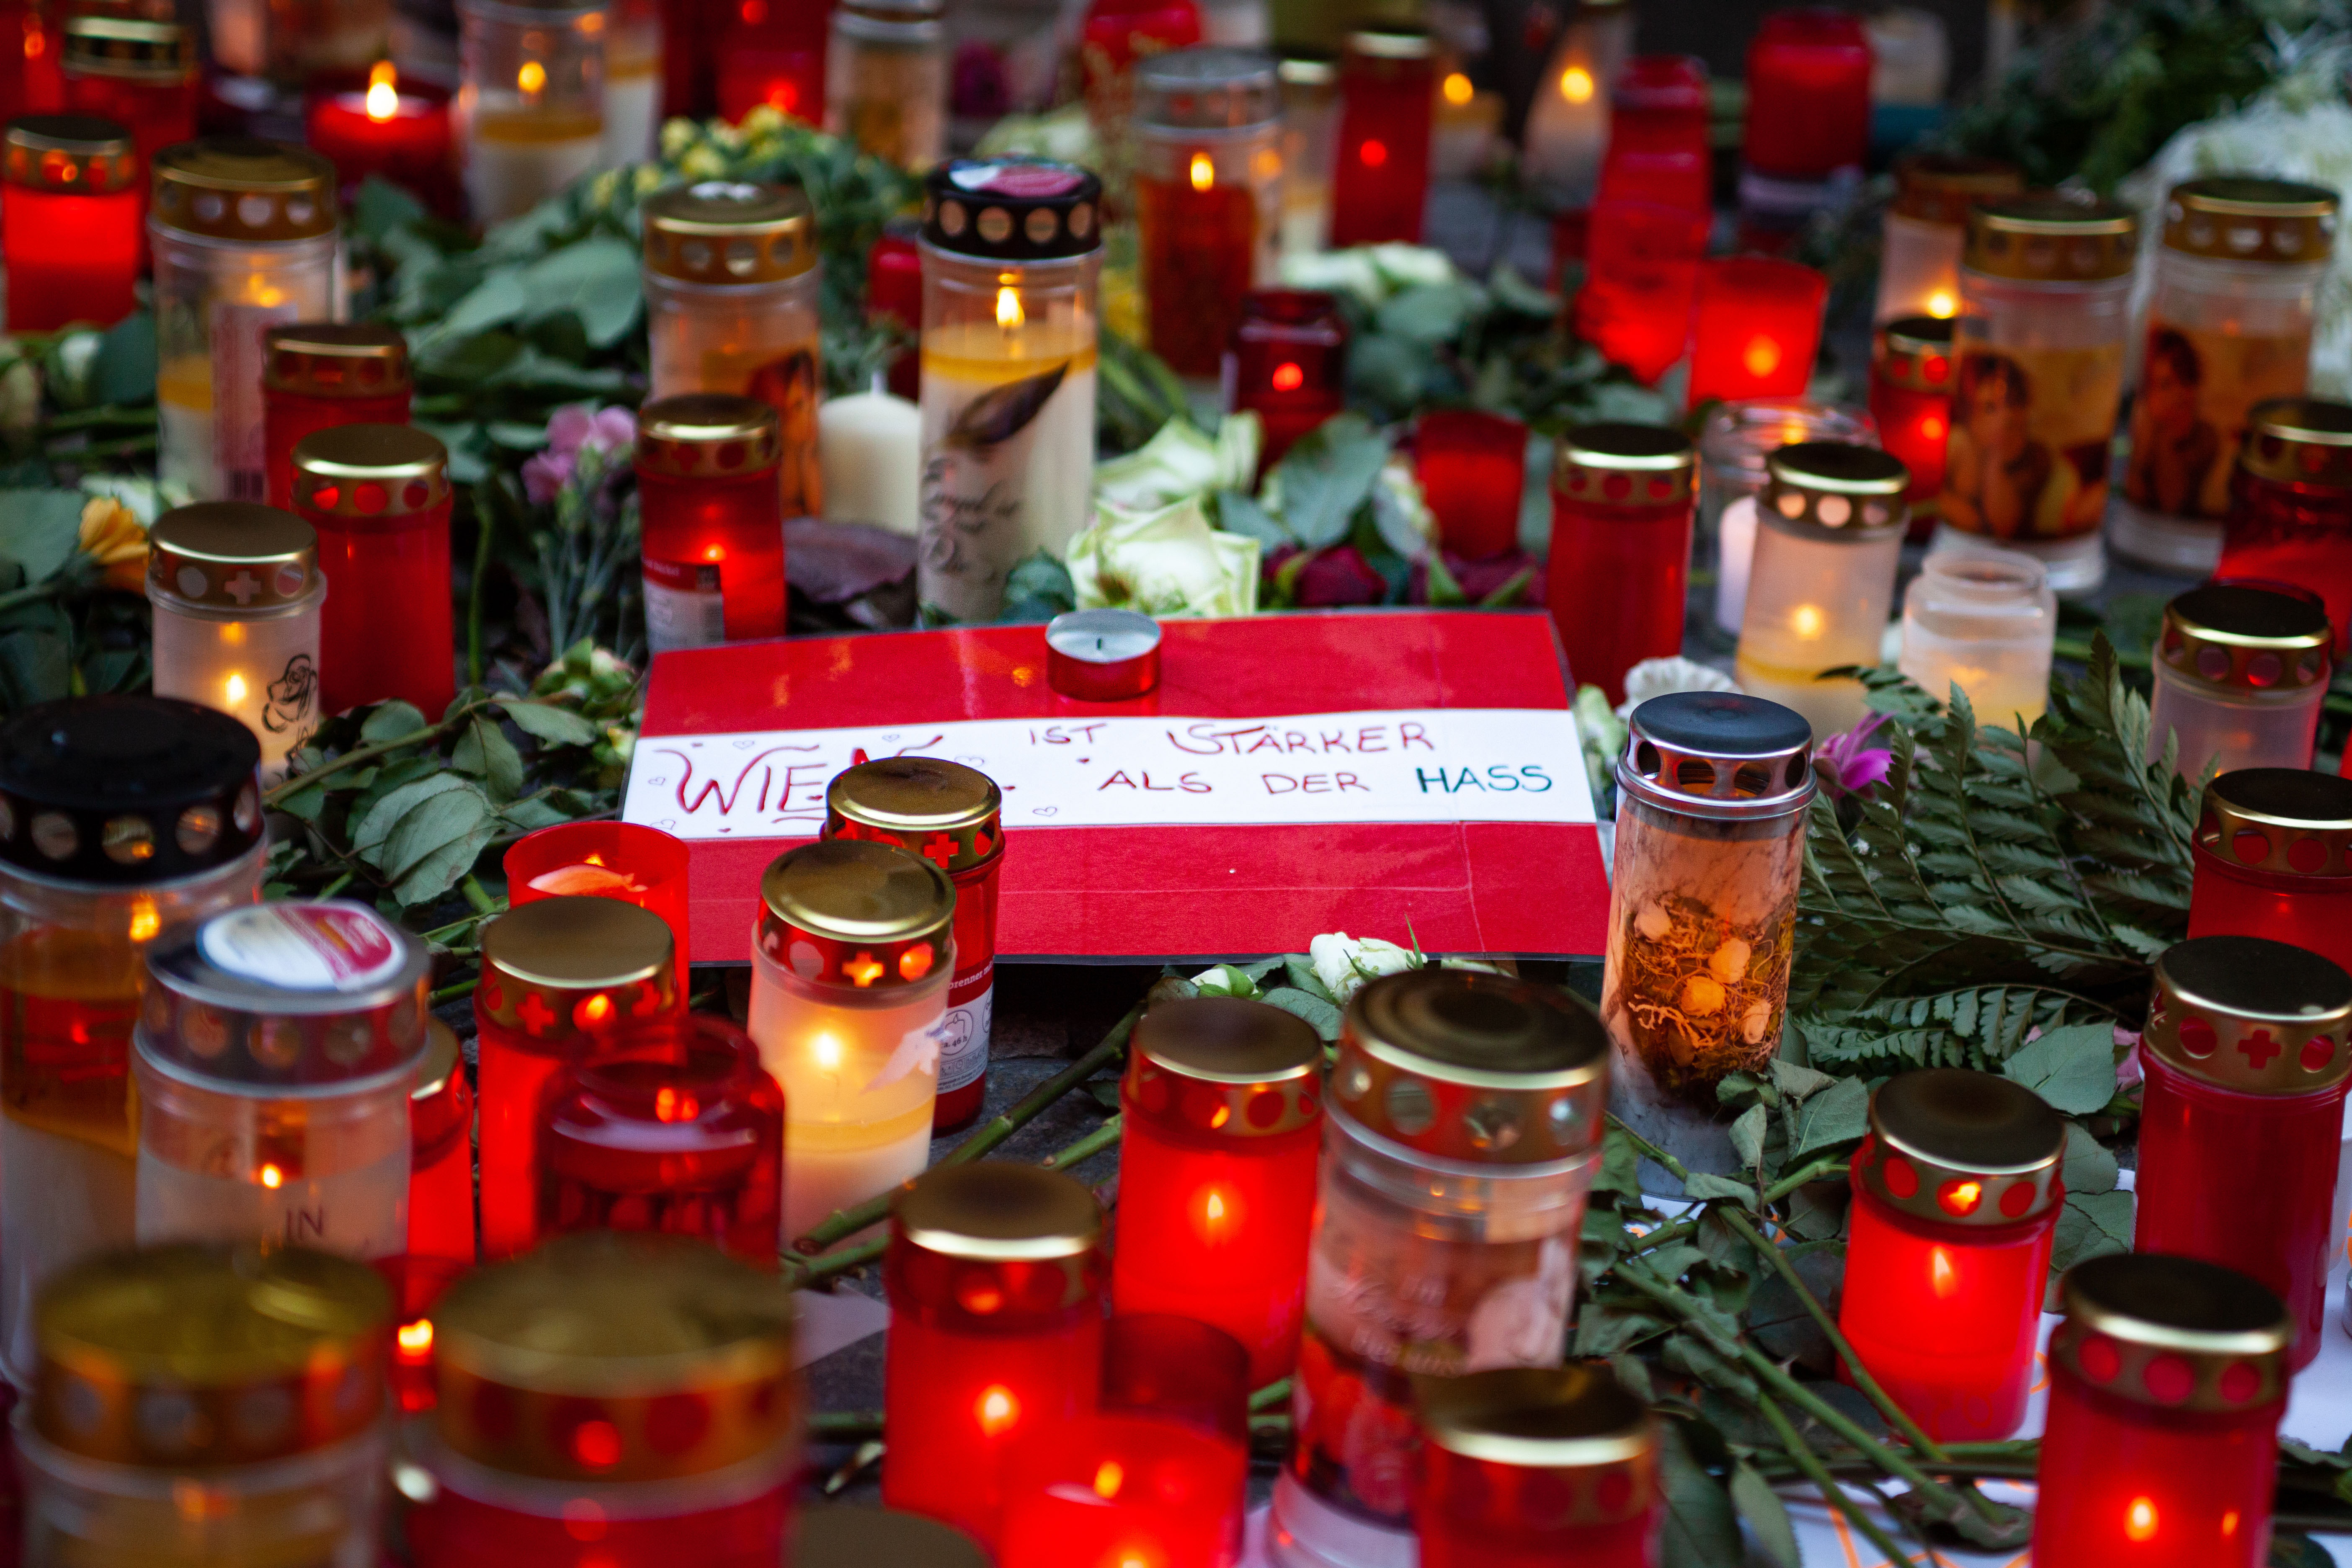 فيينا أقوى في مواجهة خطاب الكراهية باتحاد أفراد المجتمع والقيادات الدينية بعد الهجوم الإرهابي